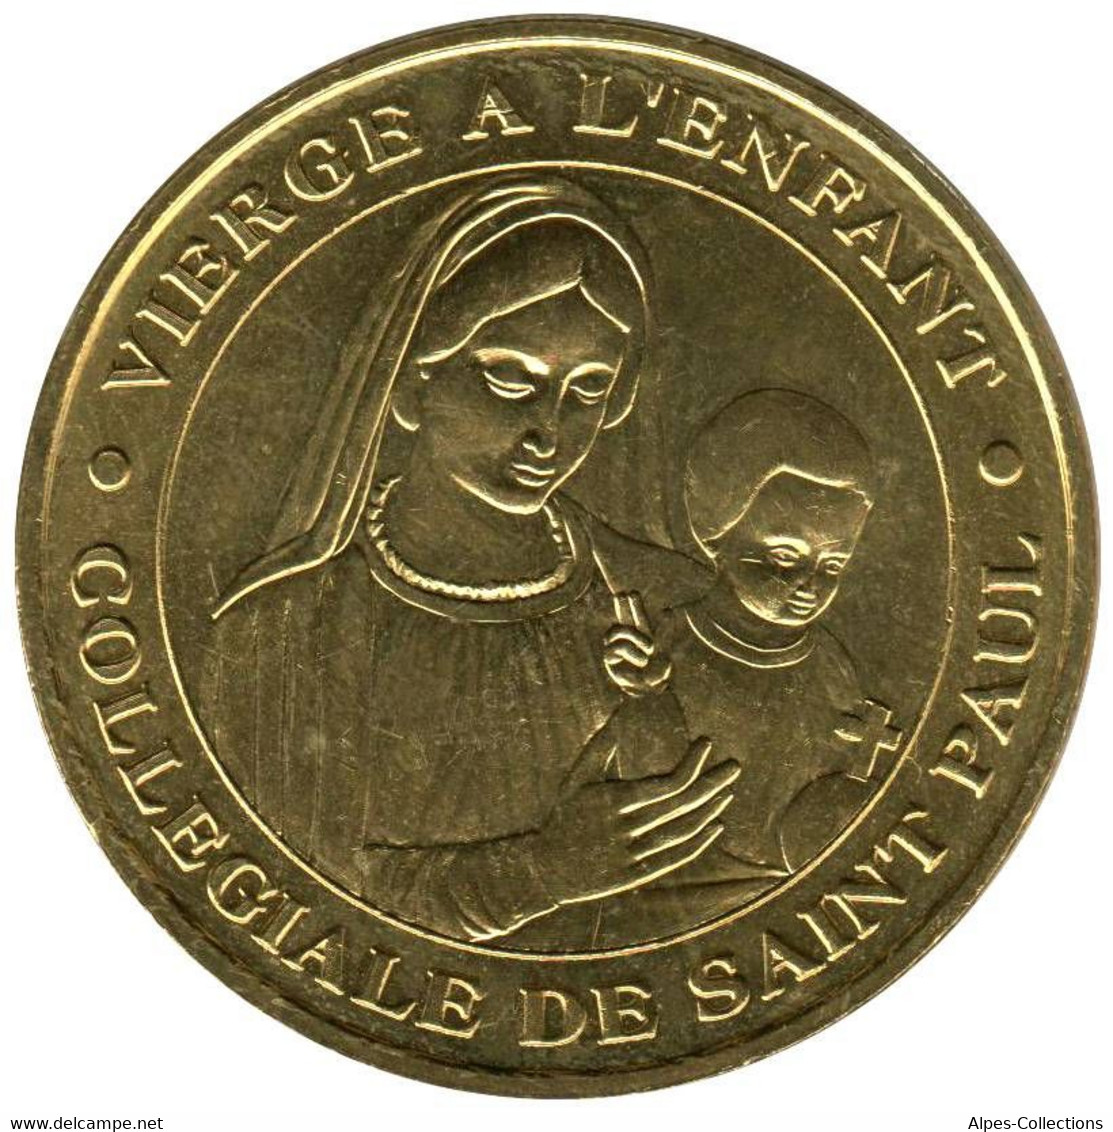 06-0008 - JETON TOURISTIQUE MDP - Collégiale Saint Paul Vierge à L'Enfant 2014.3 - 2014